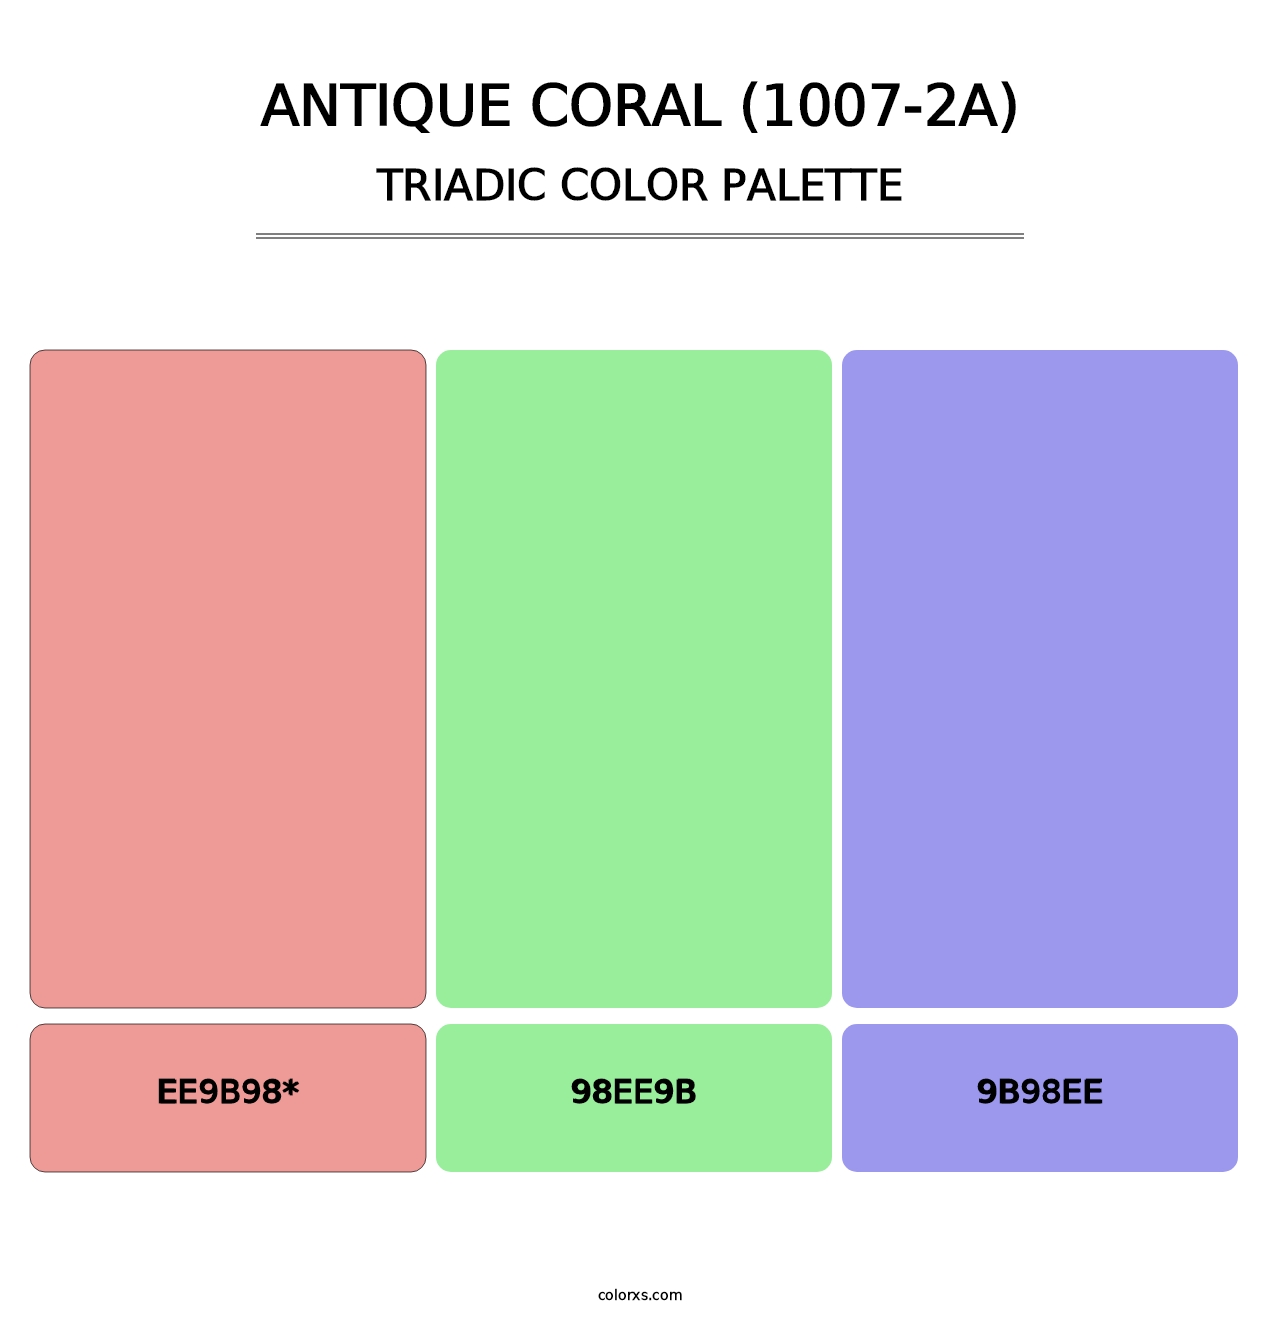 Antique Coral (1007-2A) - Triadic Color Palette